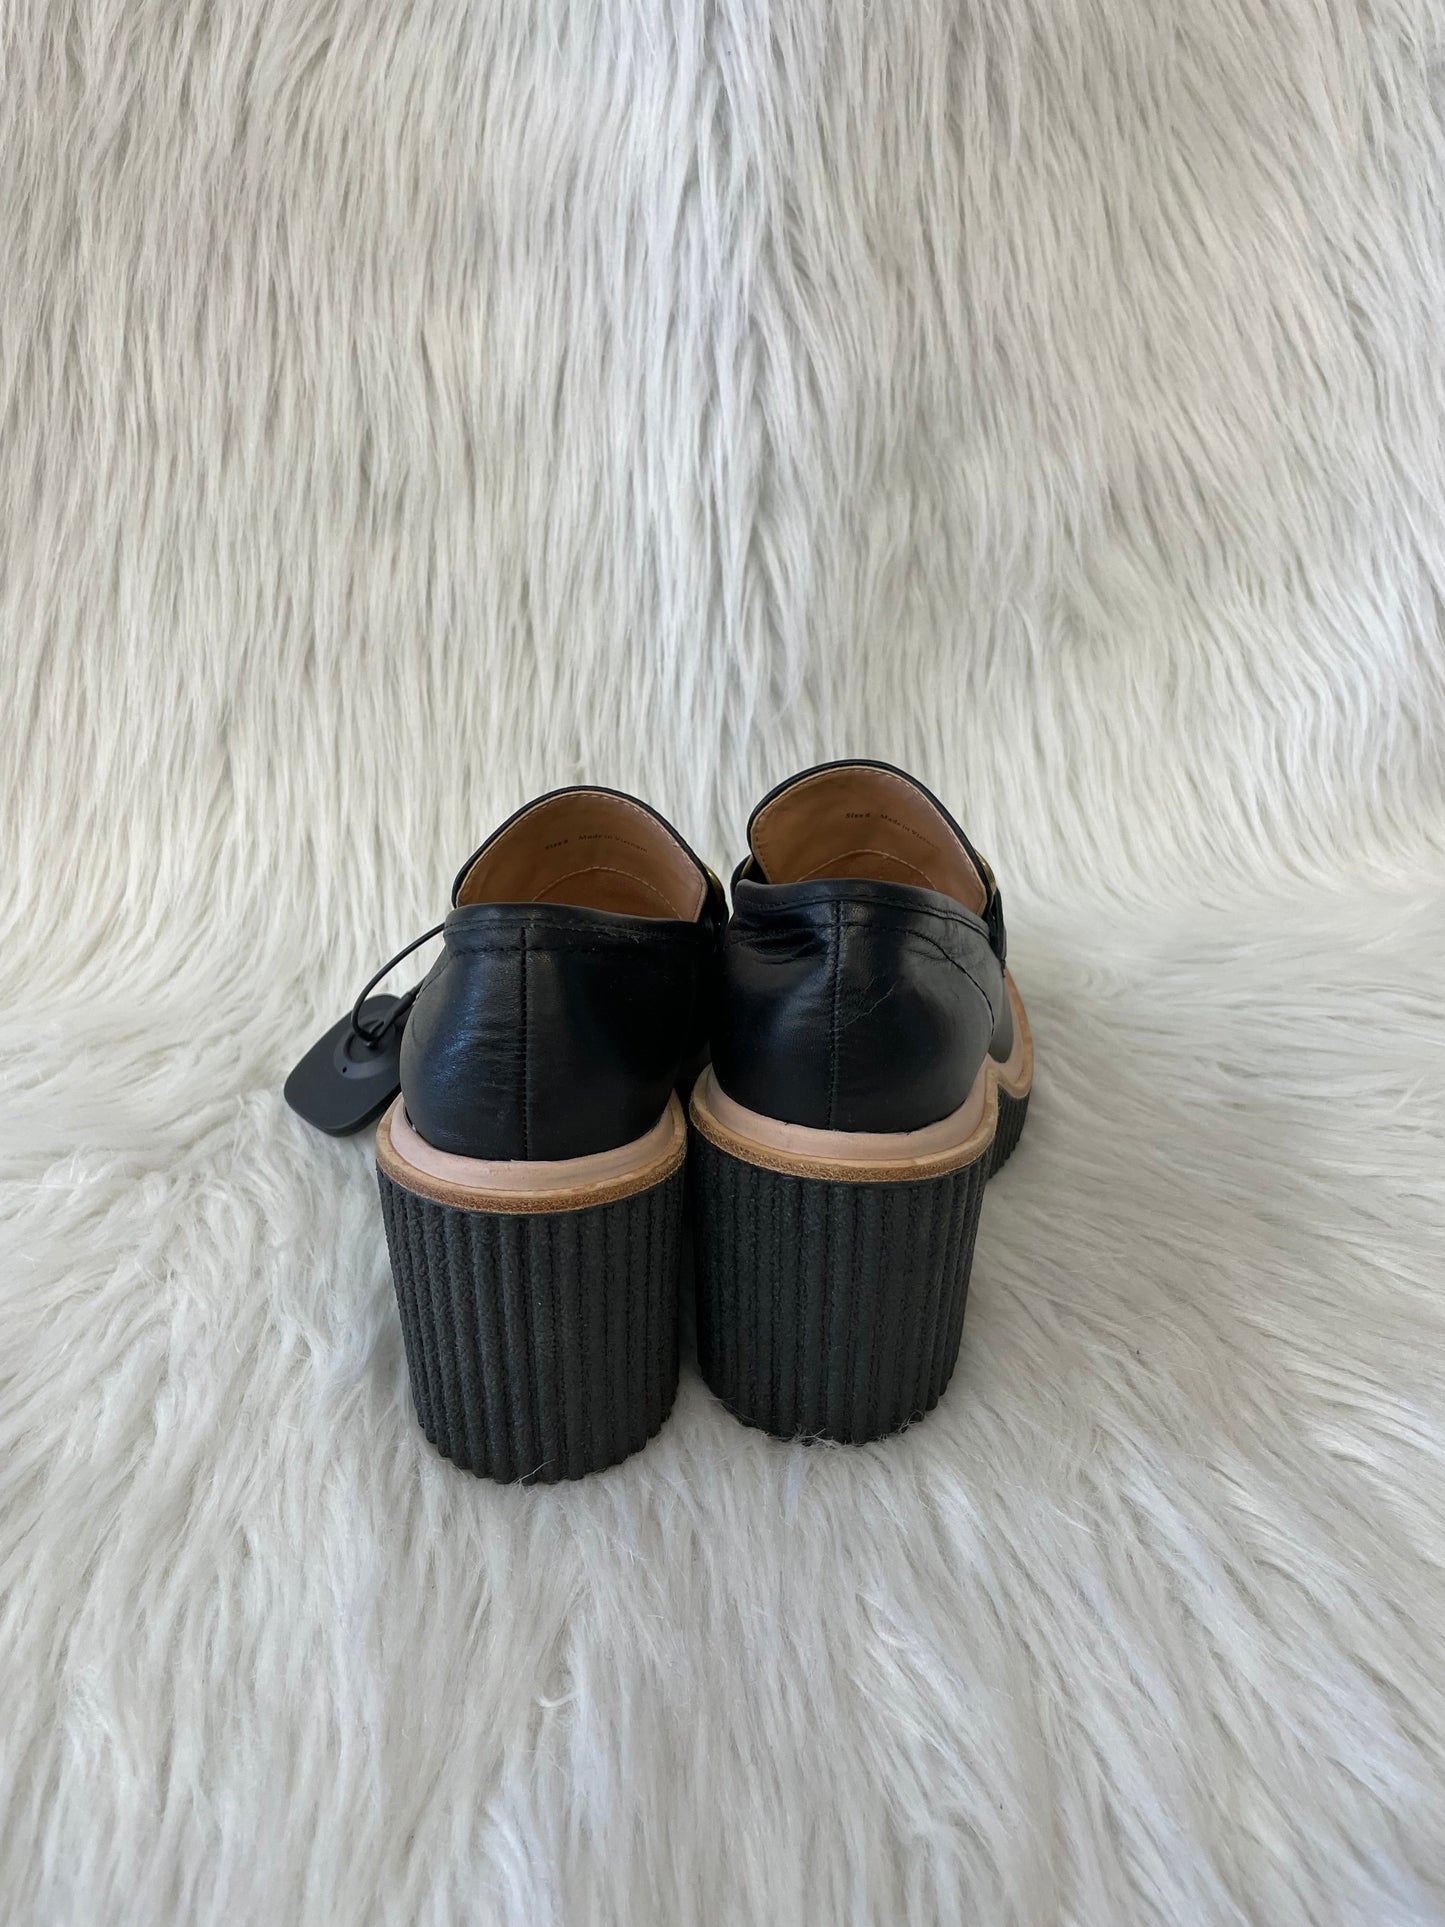 Black Shoes Heels Platform Dolce Vita, Size 6